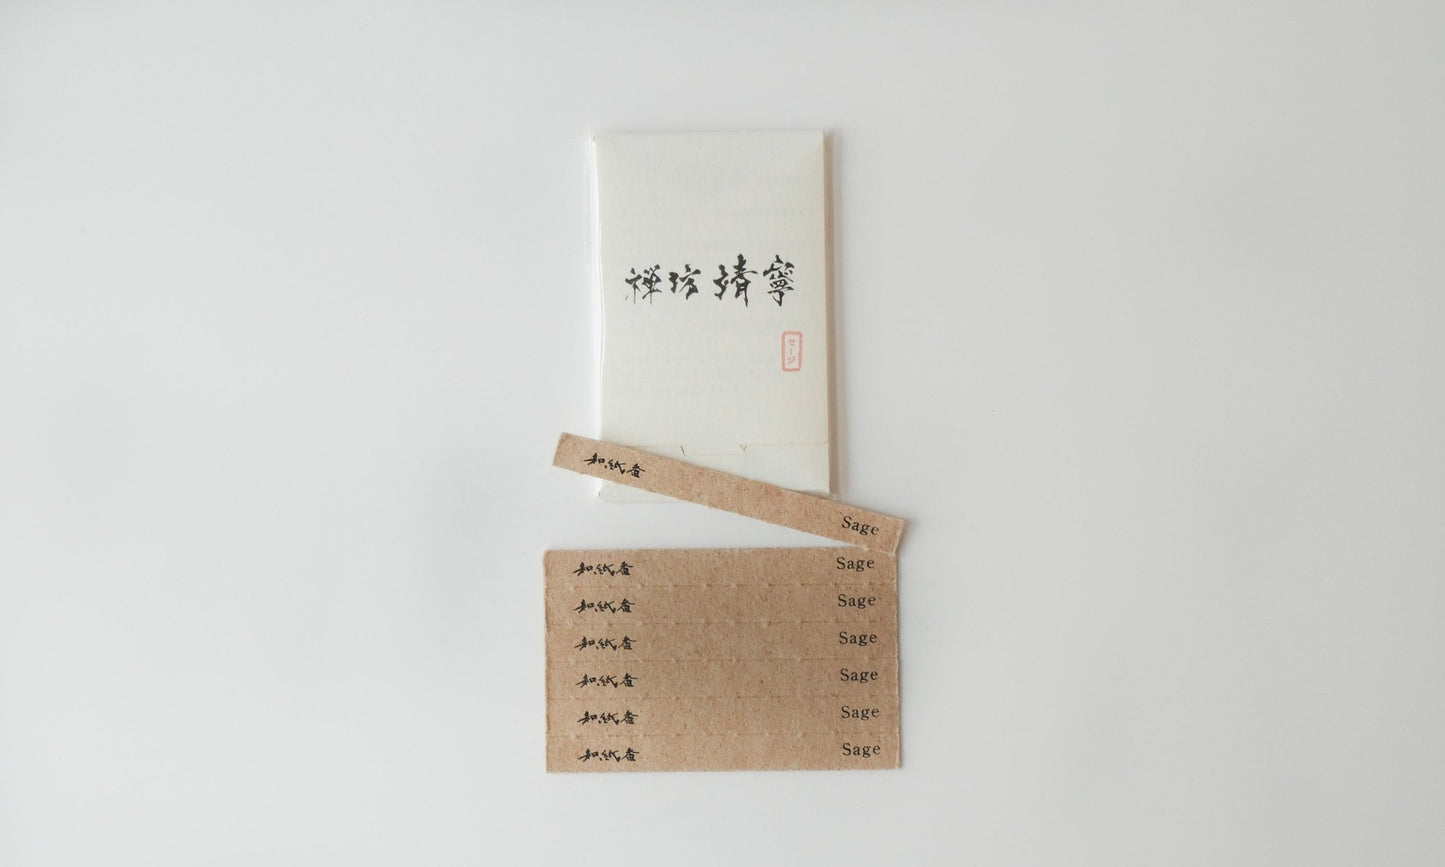 和紙香 【セージ 】とカードケースセット Original Paper Incense Set 【 Sage】 - zenboseineionlinestorezenboseineionlinestore